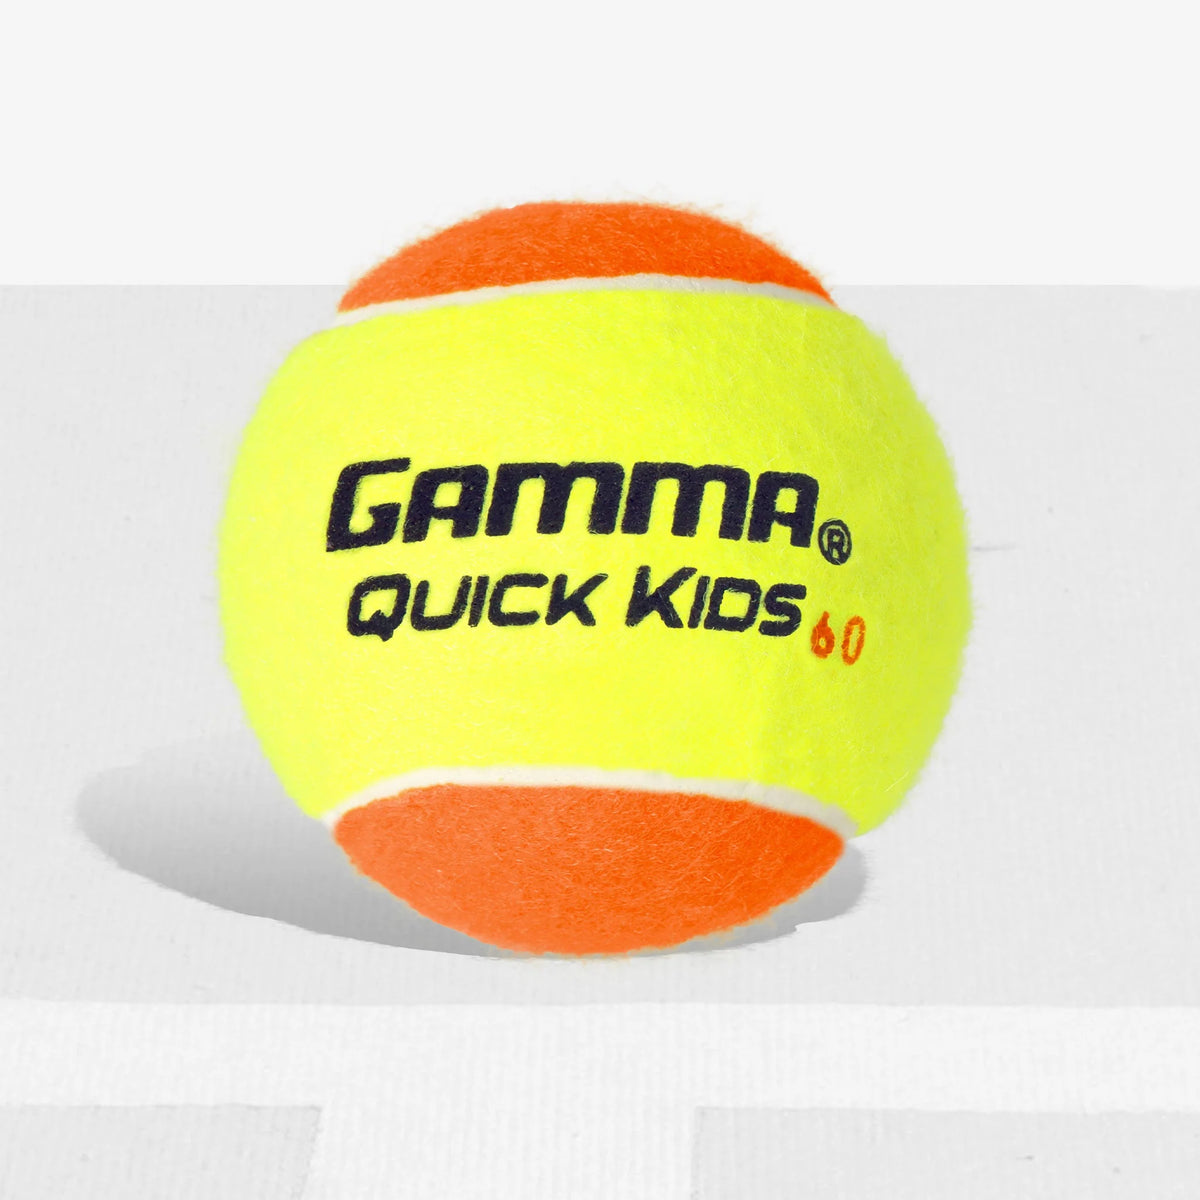 Quick Kids 60 Tennis Ball